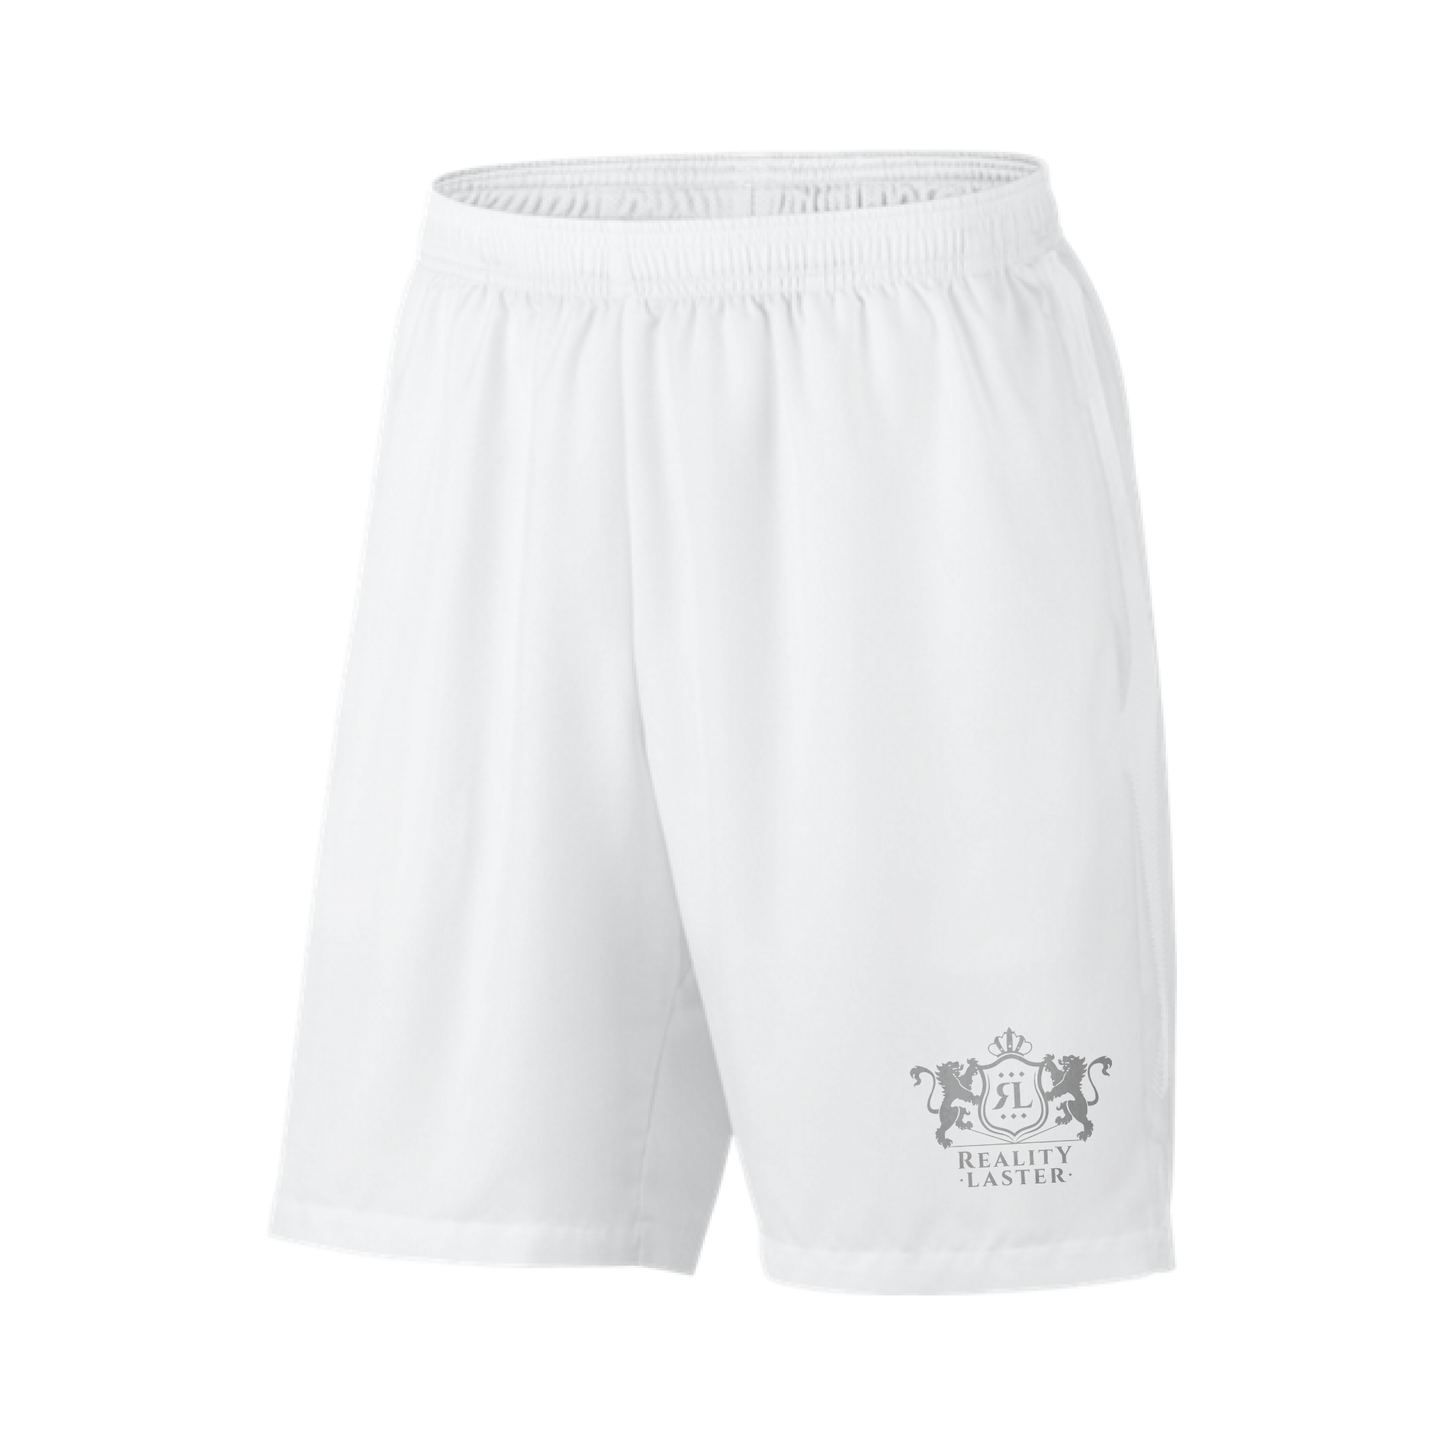 Men's White Shorts